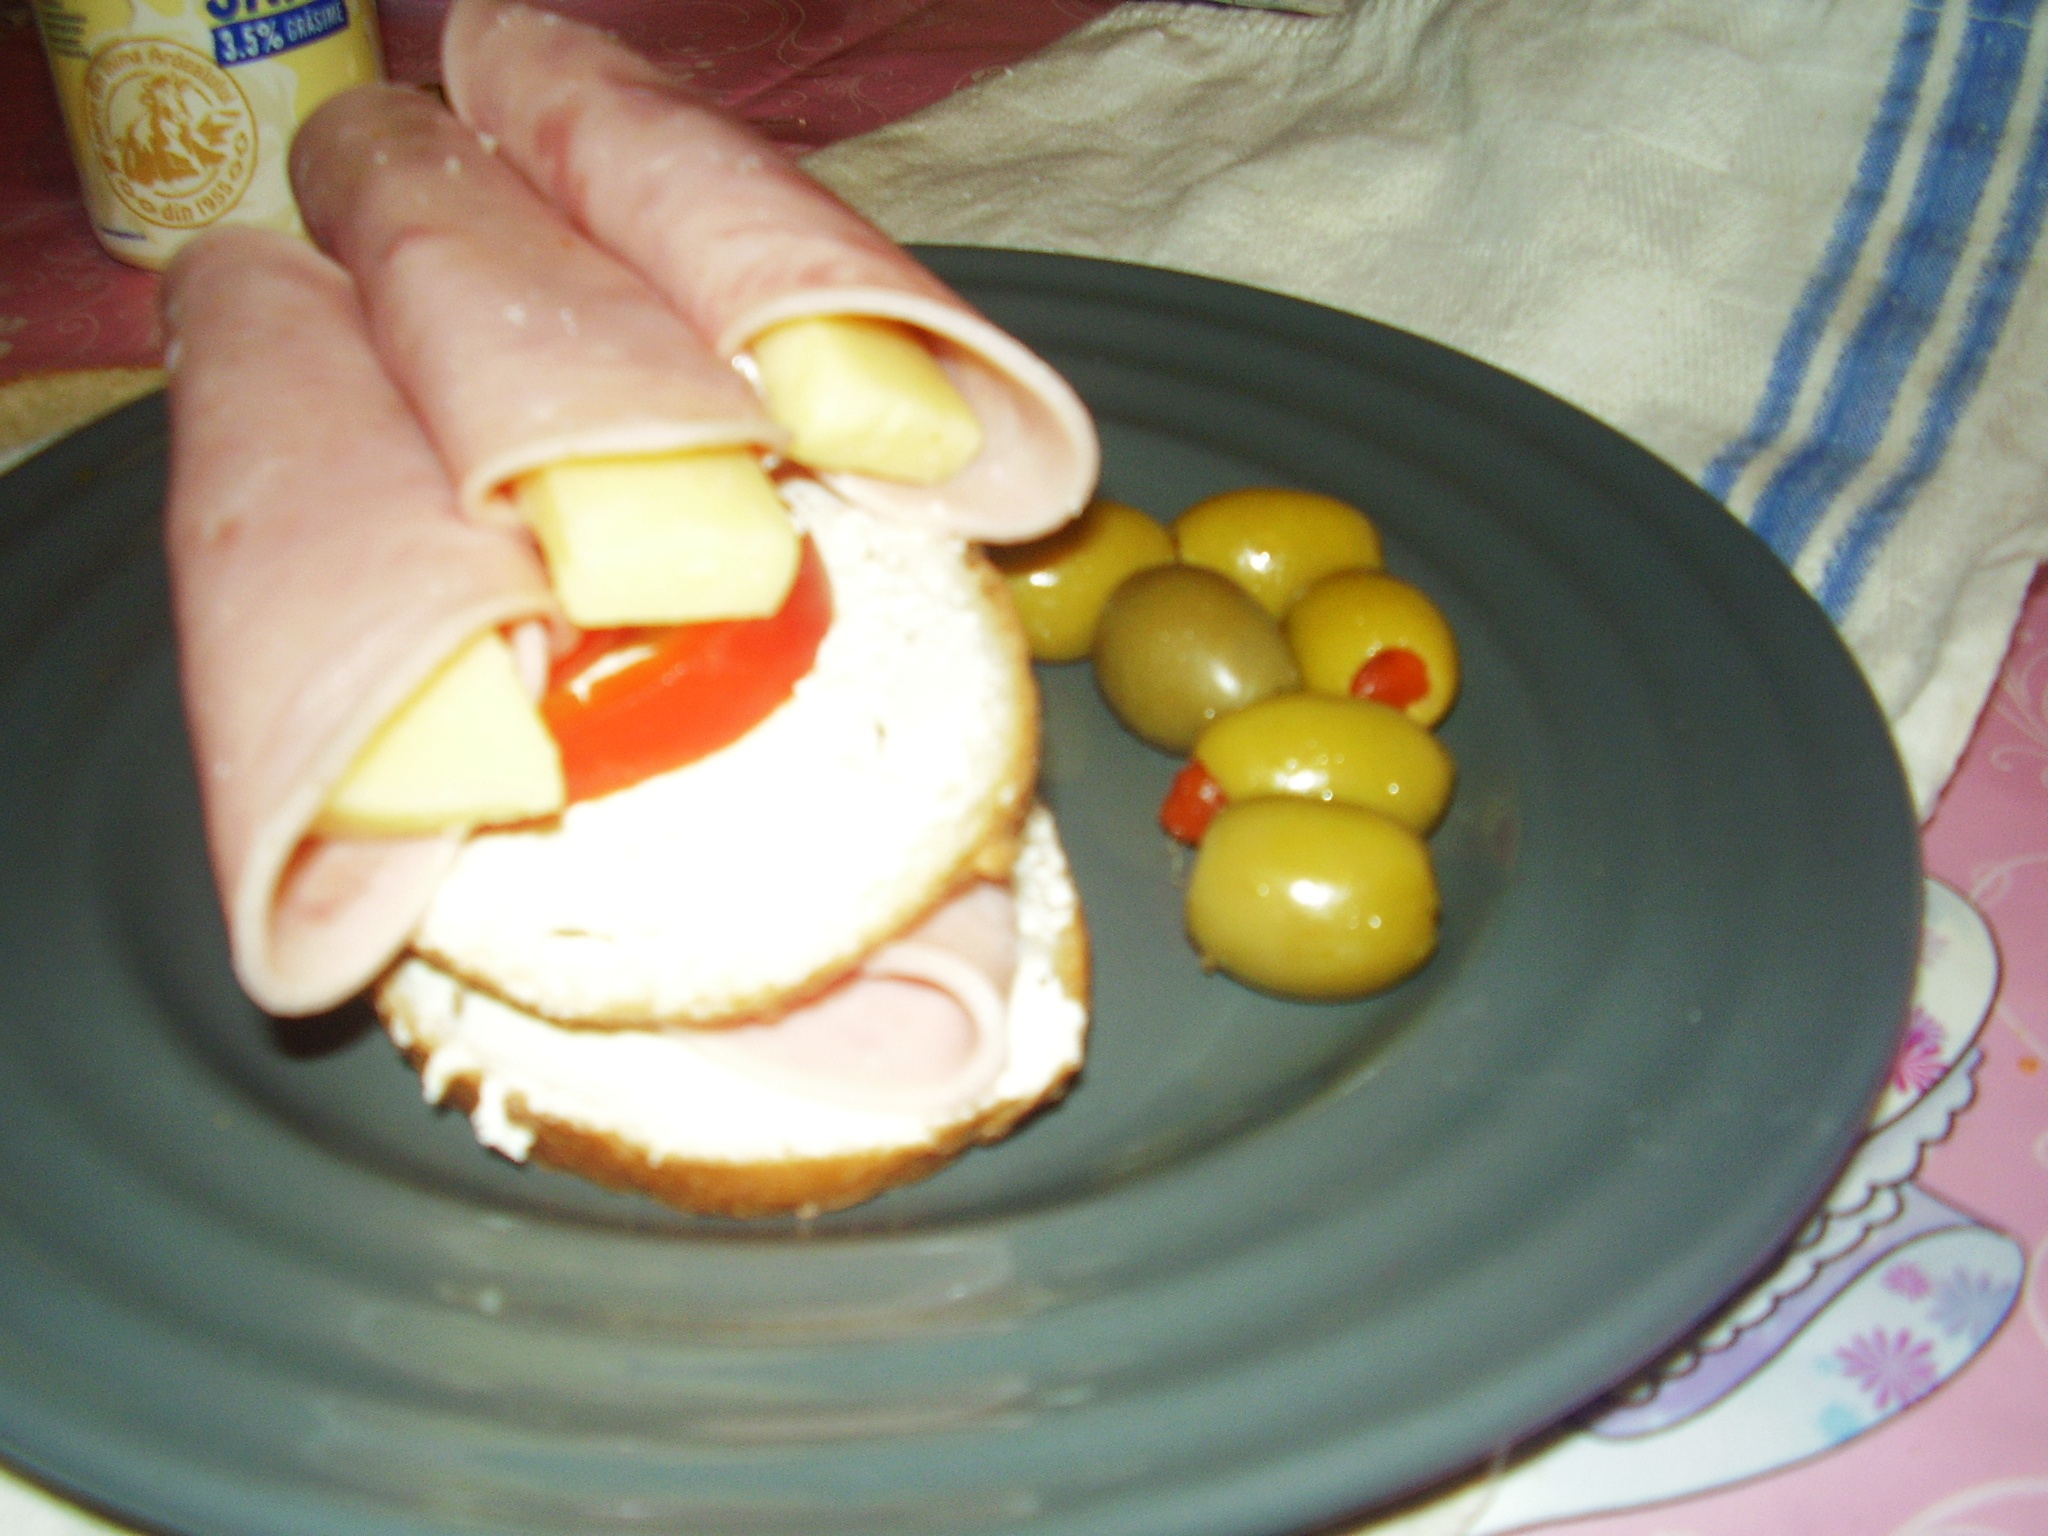 Sandwich cu rulouri de sunca presata